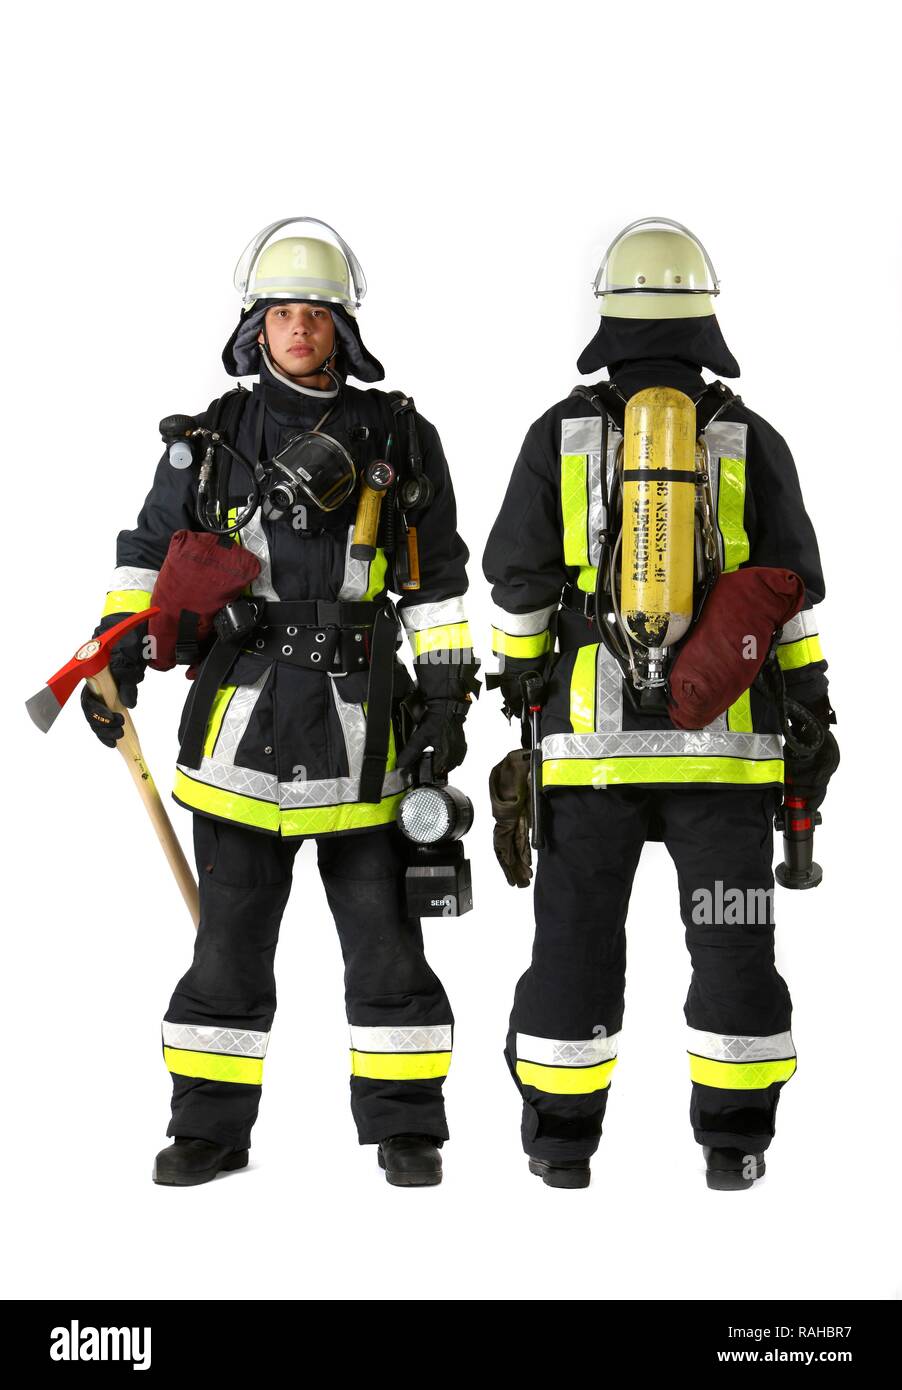 Feuerwehrleute, Teil einer Antwort Kader für die Brandbekämpfung, mit Schutzkleidung aus Nomex, ein Helm mit Visier, einer Feueraxt, Stockfoto